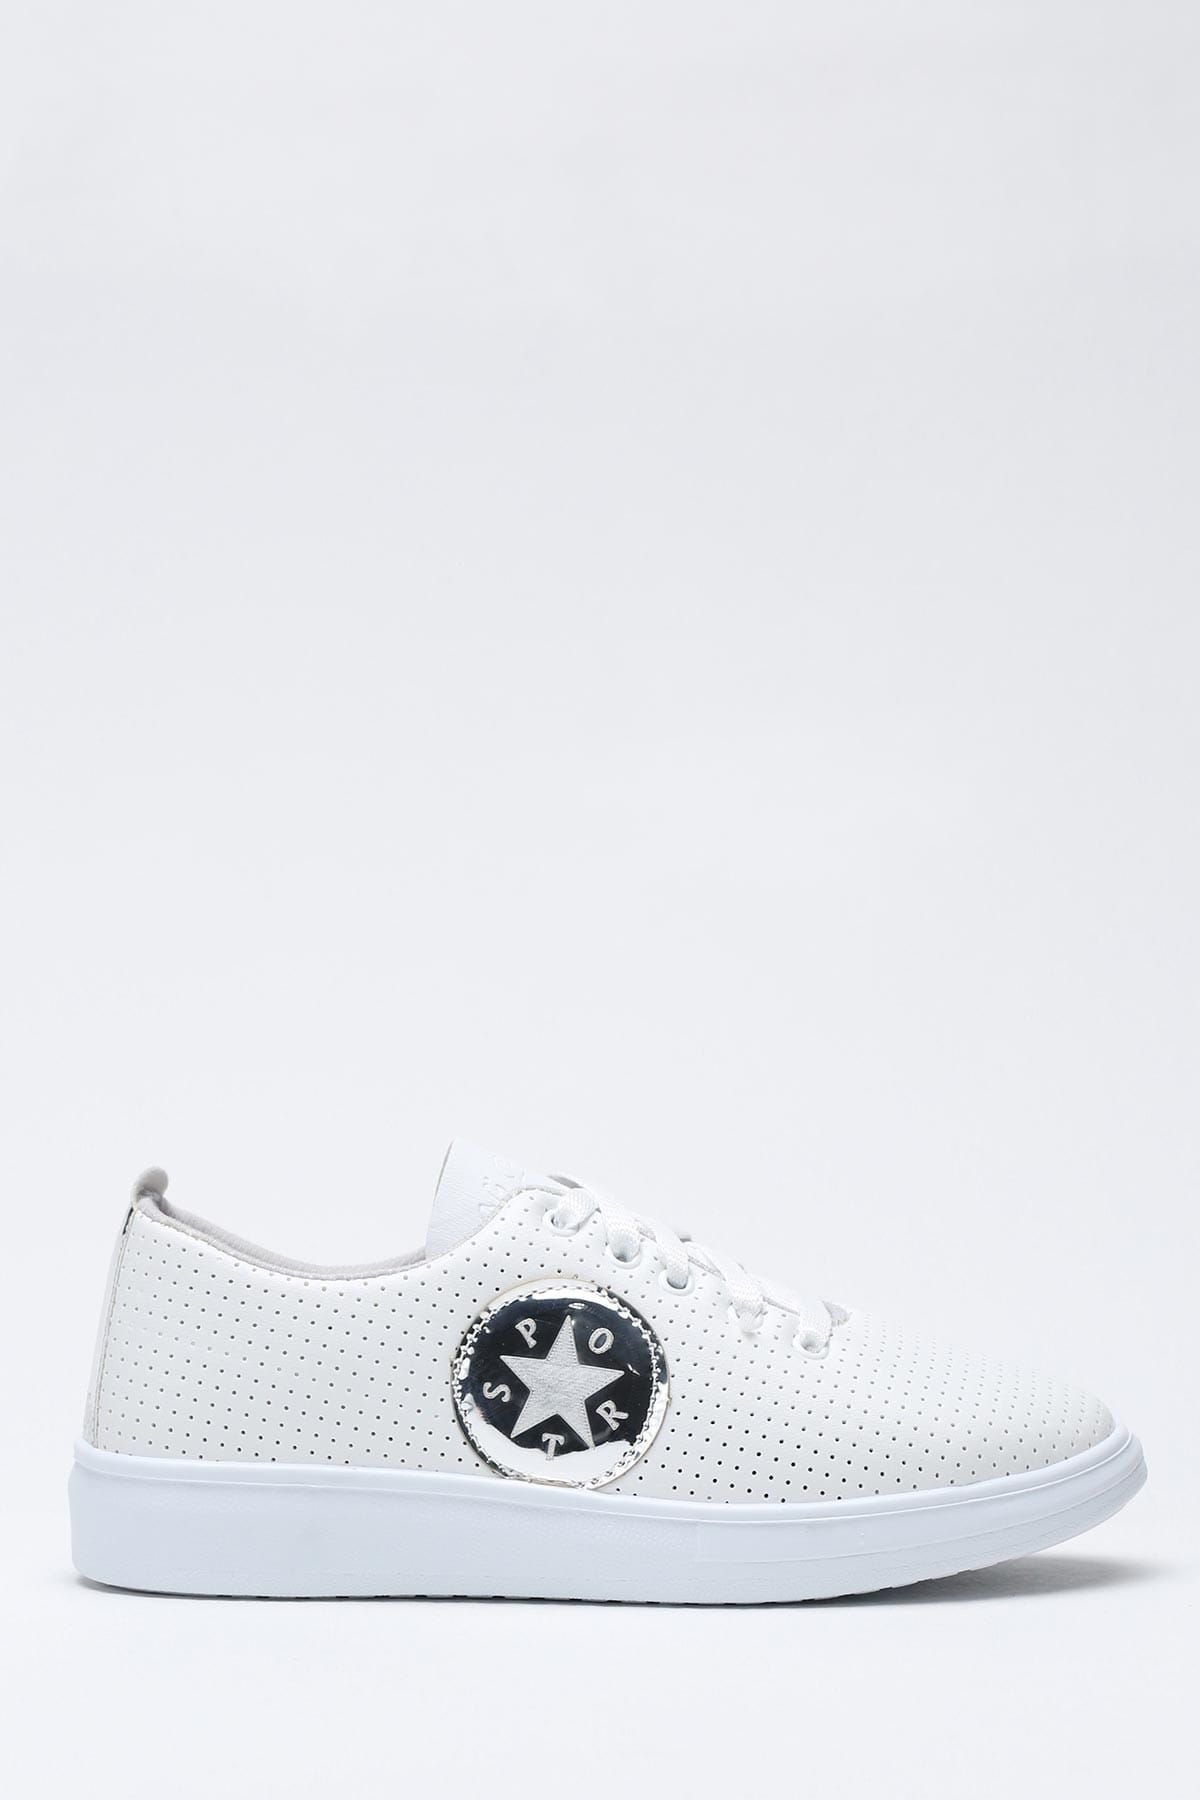 Ayakkabı Modası Beyaz Gümüş Kadın Spor Ayakkabı 1938-9-4213